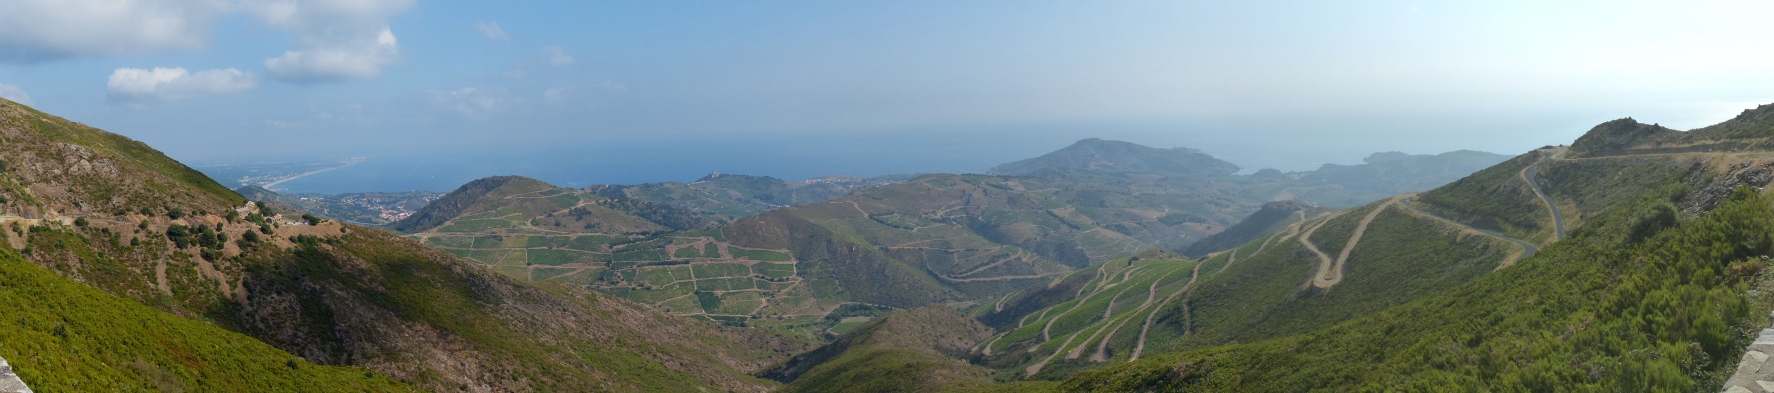 Panorama : Vue panoramique d Argelès-sur-Mer - Collioure - Port-Vendres et Banyuls-sur-Mer.